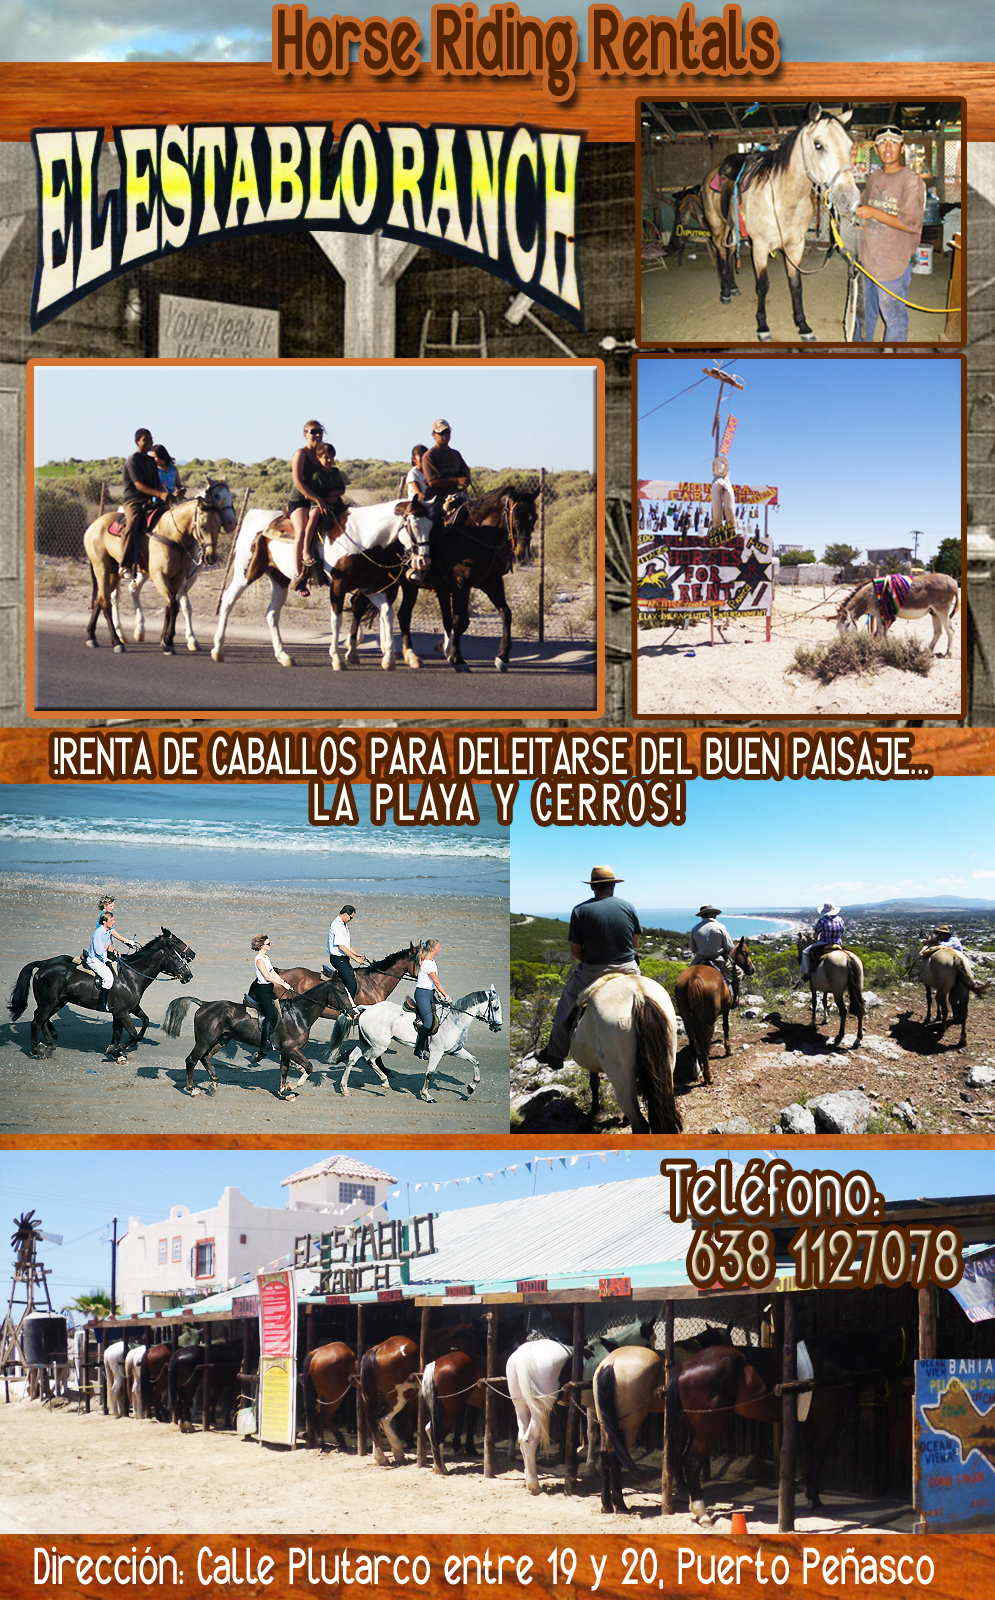 El establo ranch-RENTA DE CABALLOS PARA DELEITARSE DEL BUEN PAISAJE DE LA PLAYA Y CERROS!    